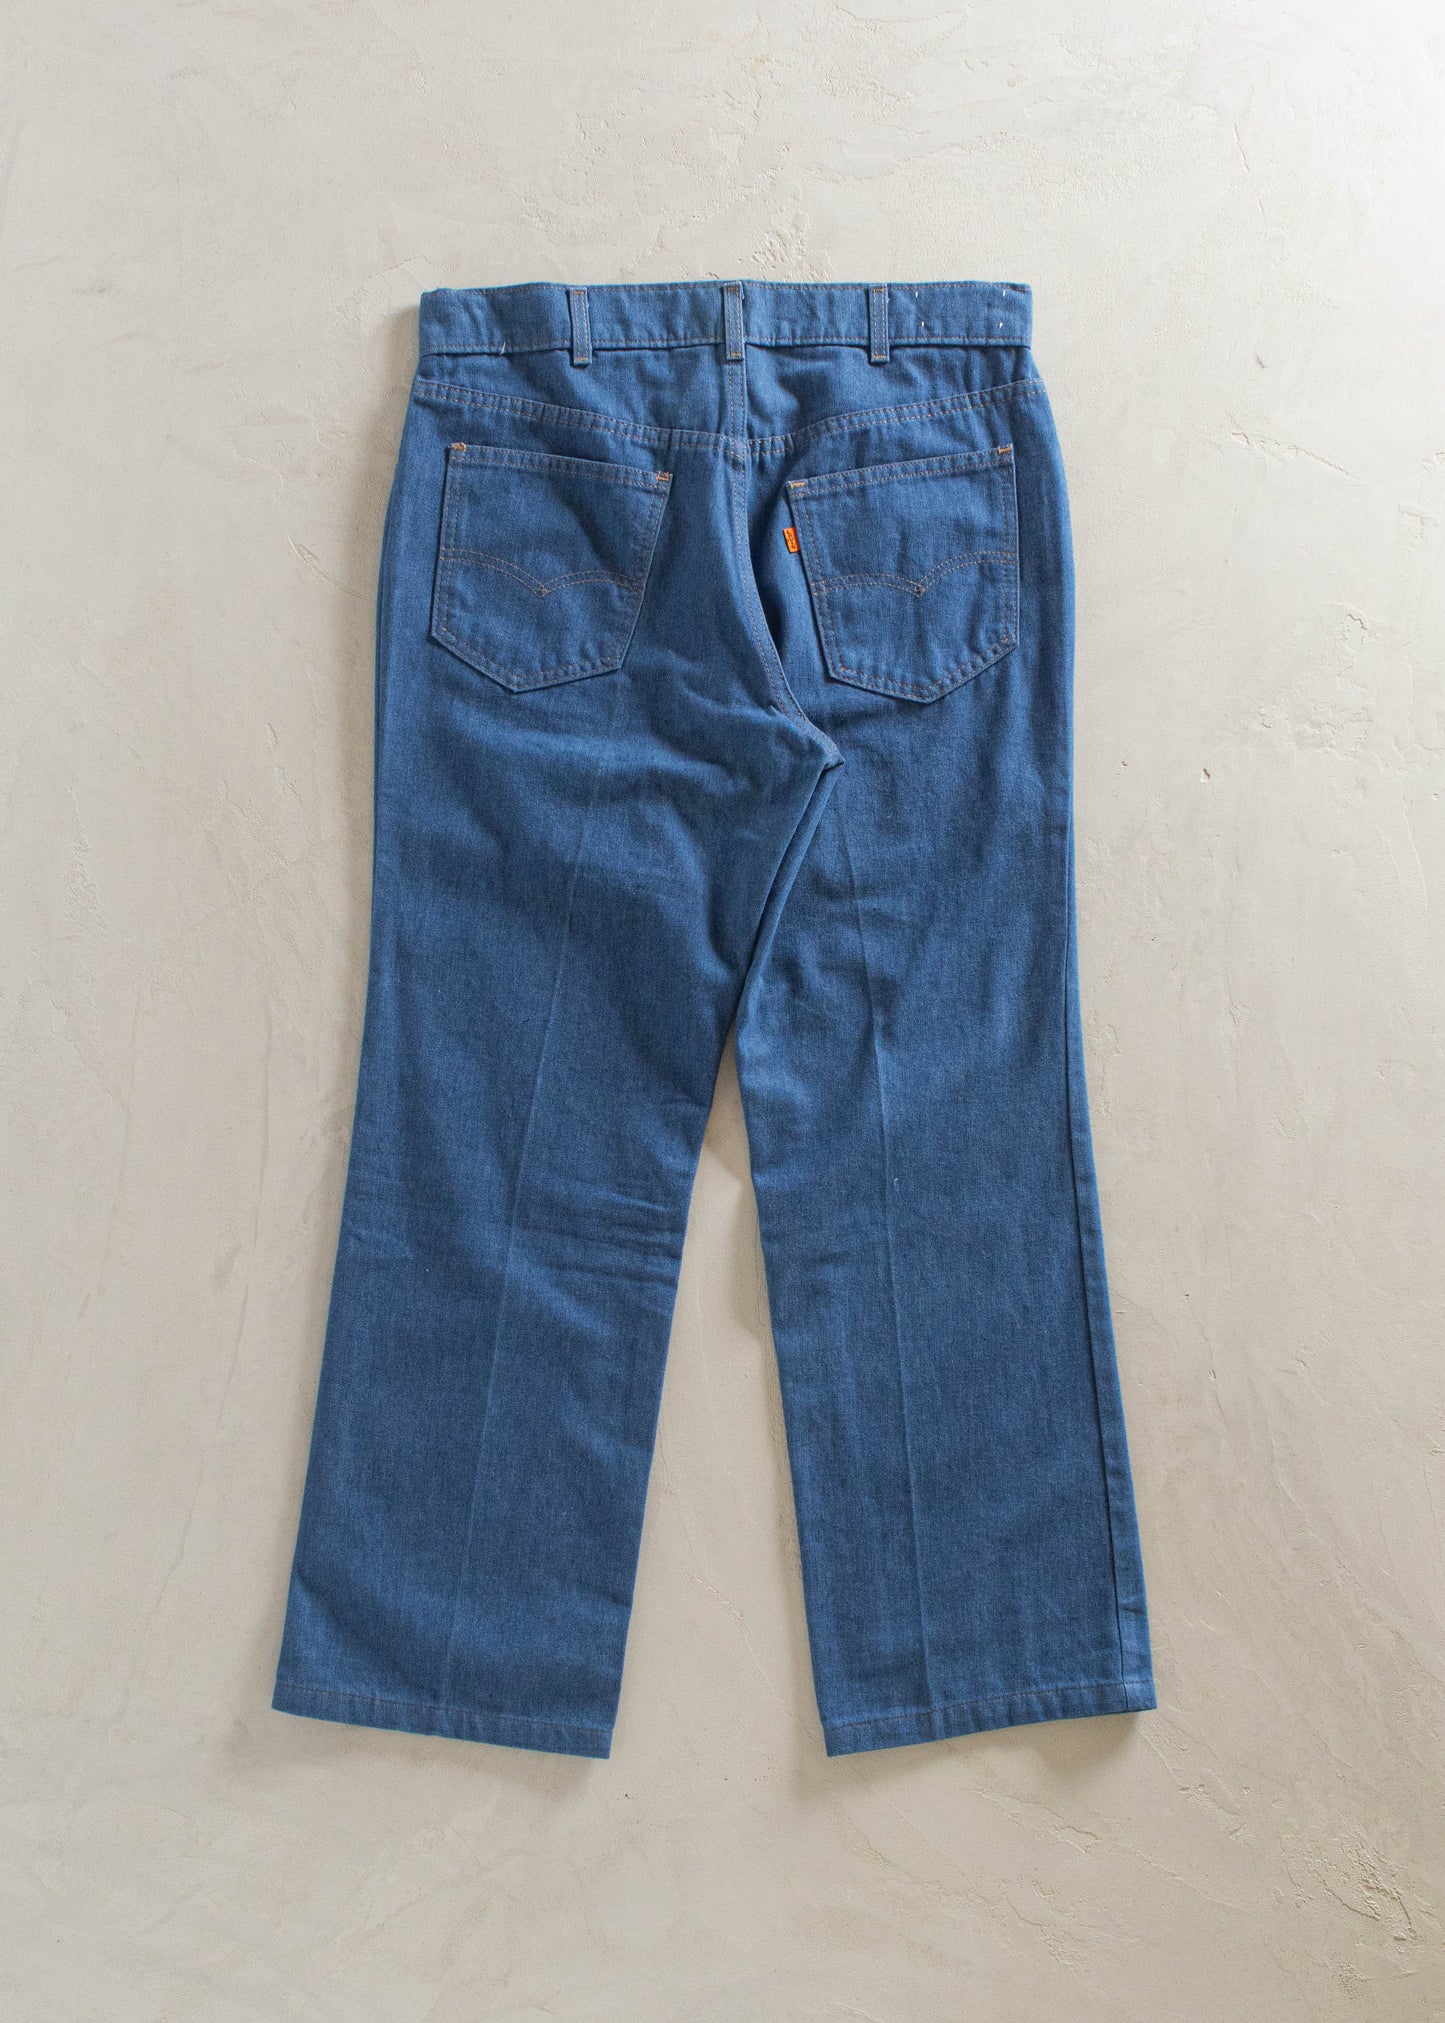 1980s Levi's Midwash Jeans Size Women's 30 Men's 32